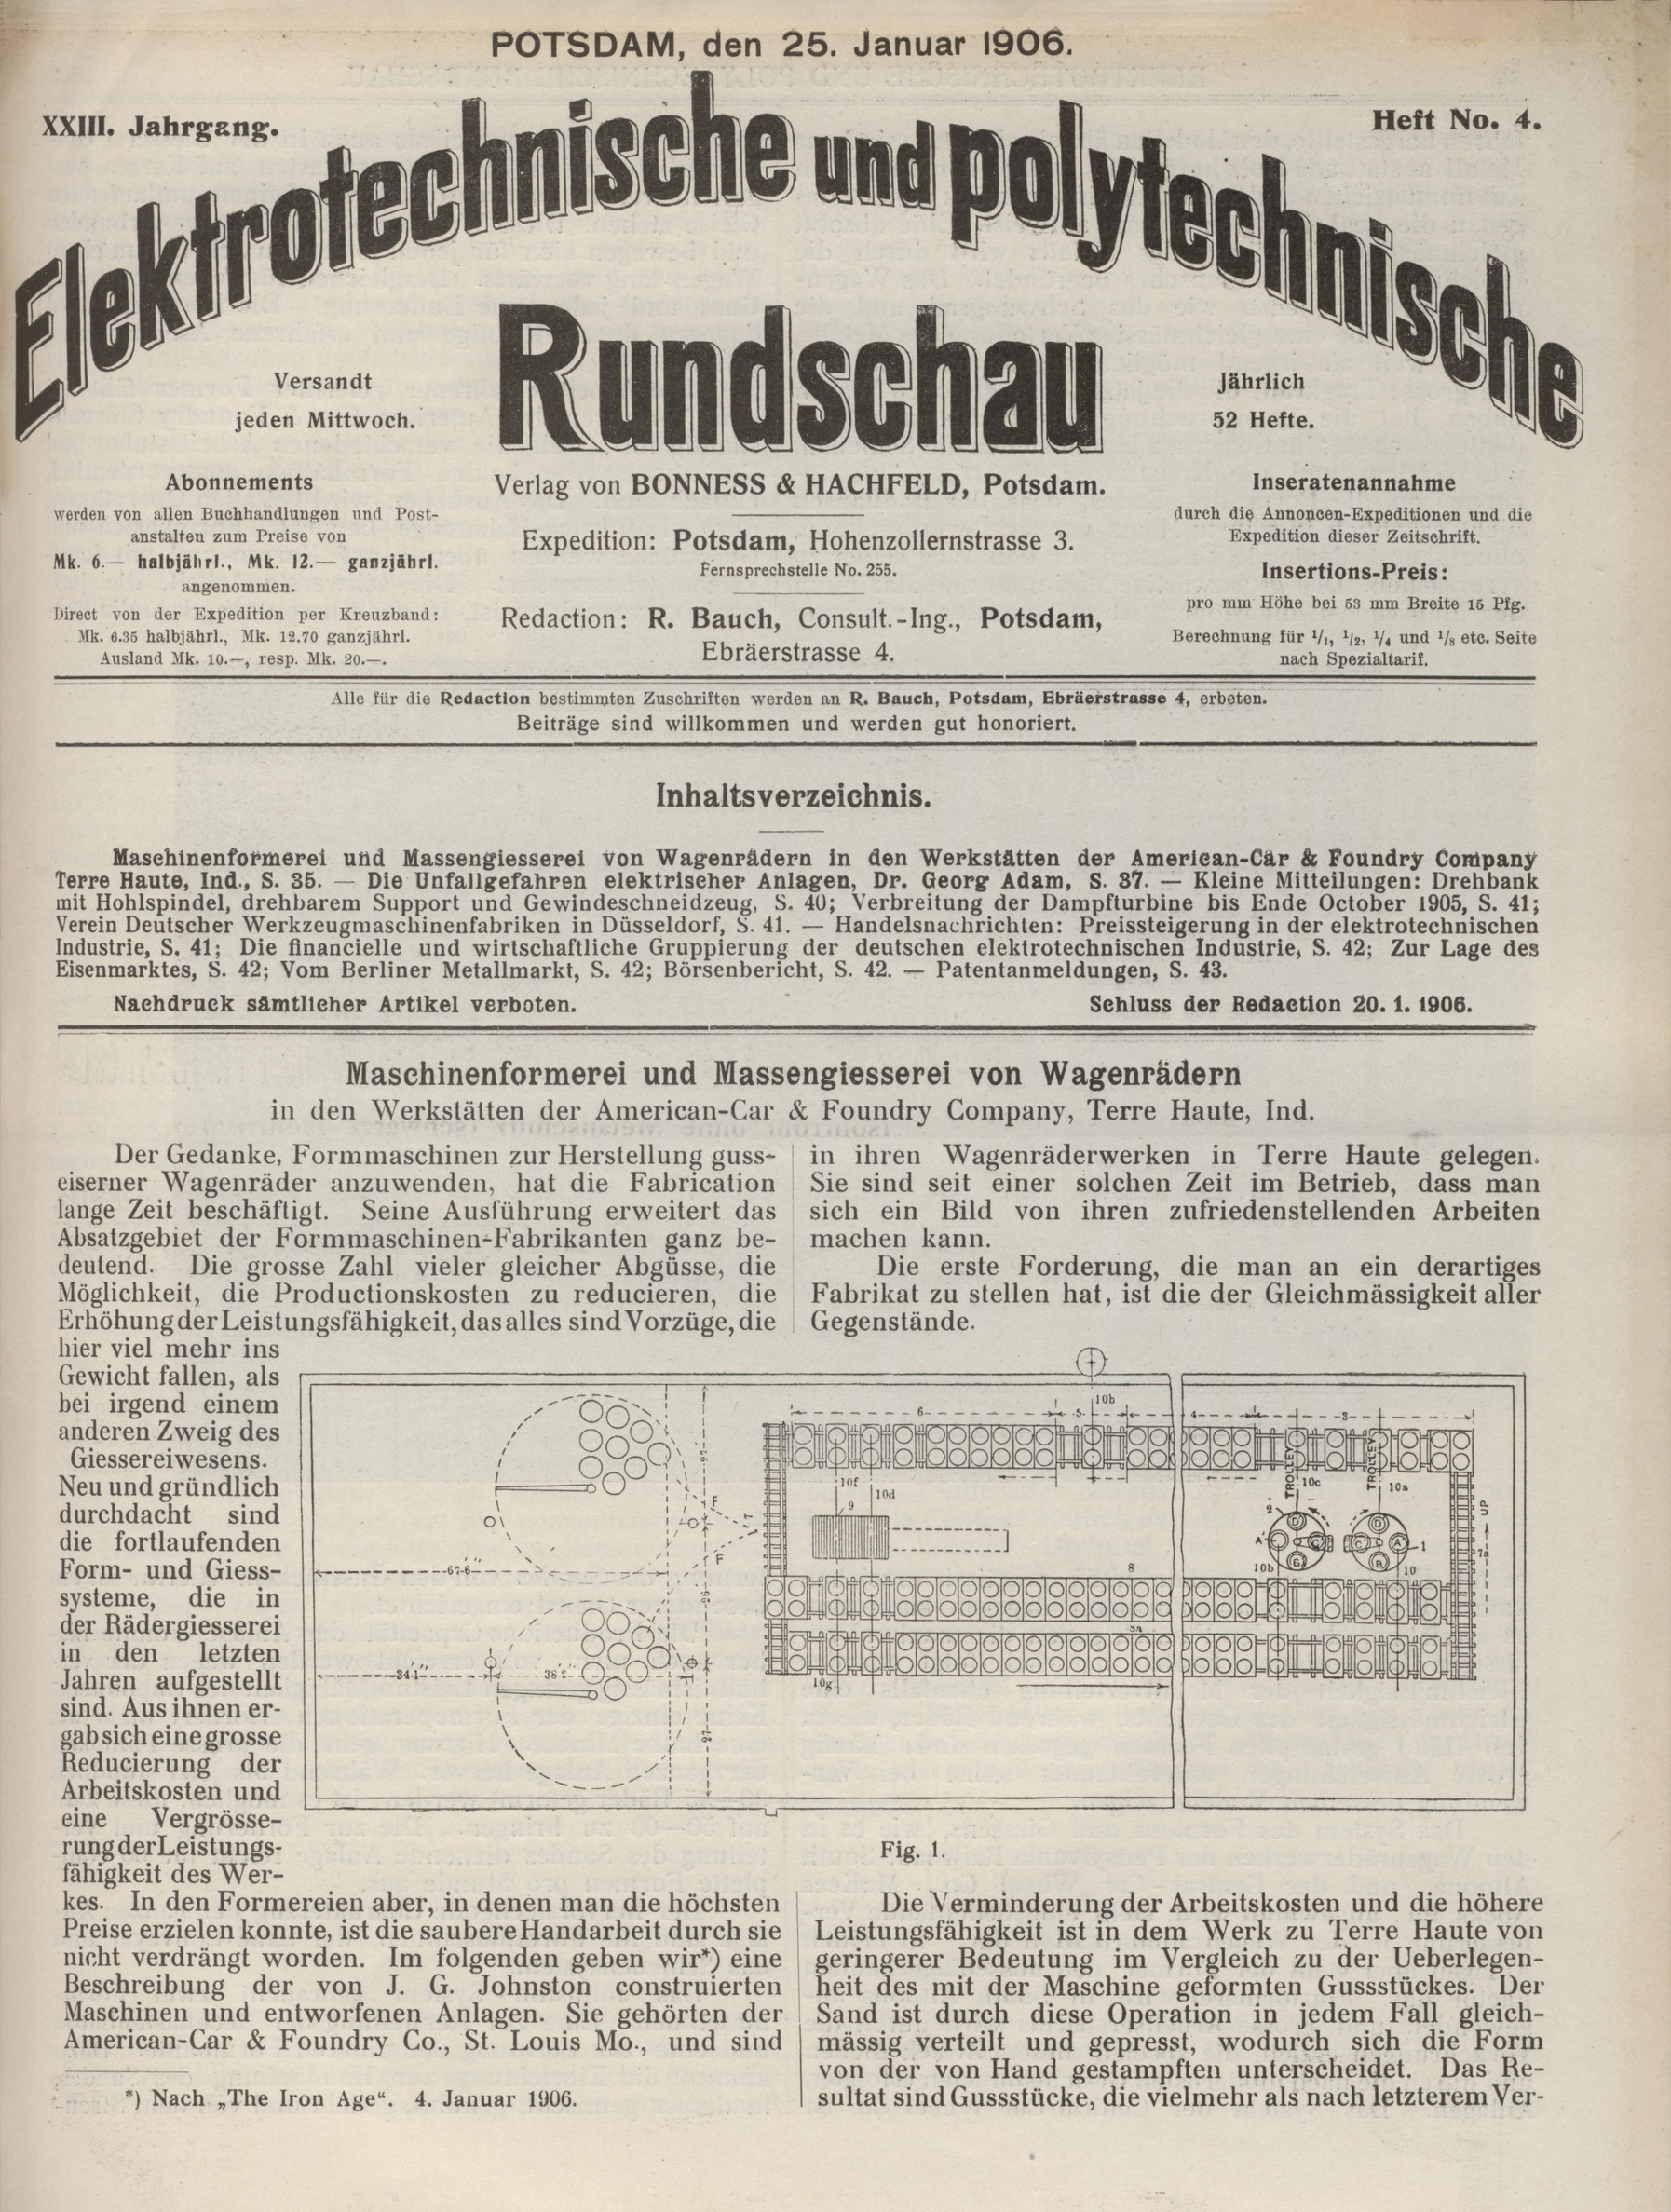 Elektrotechnische und polytechnische Rundschau, XXIII. Jahrgang, Heft No. 4